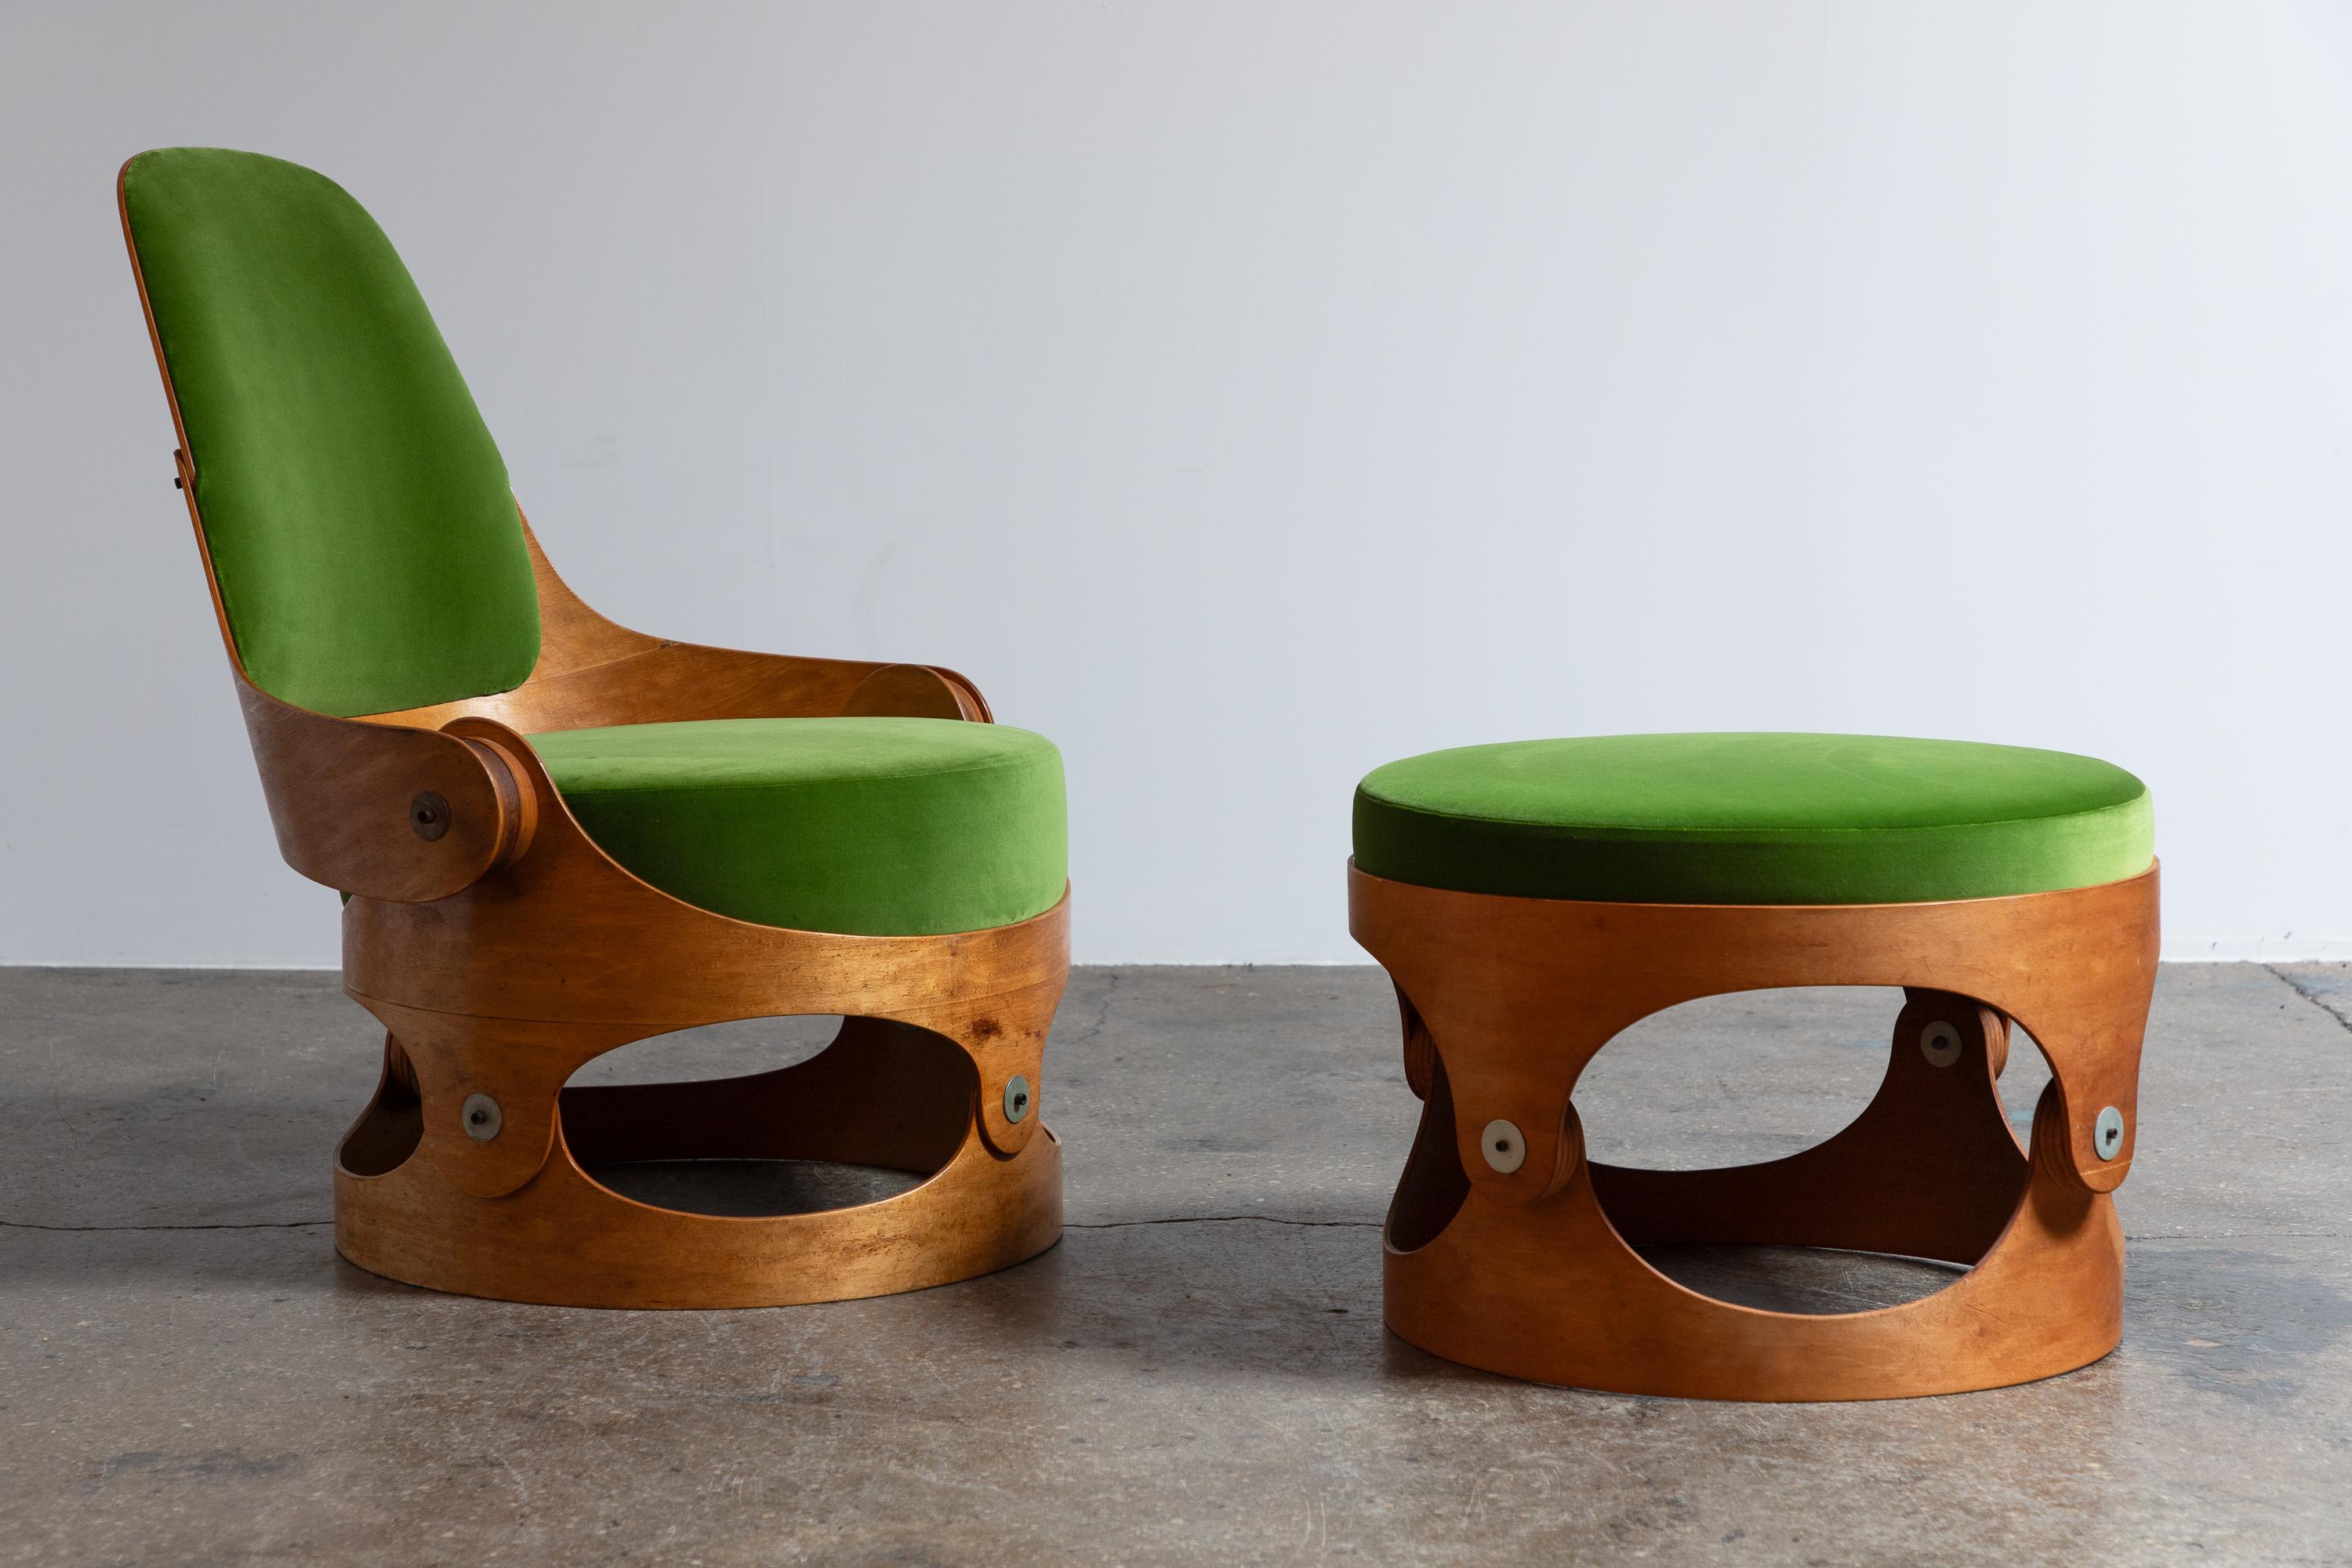 Chaise et ottoman modernistes en contreplaqué cintré, conçus par l'architecte Leandre Poisson. La chaise est composée de structures incurvées en contreplaqué, reliées par des ferrures apparentes et complétées par de généreux coussins. S'inspirant de